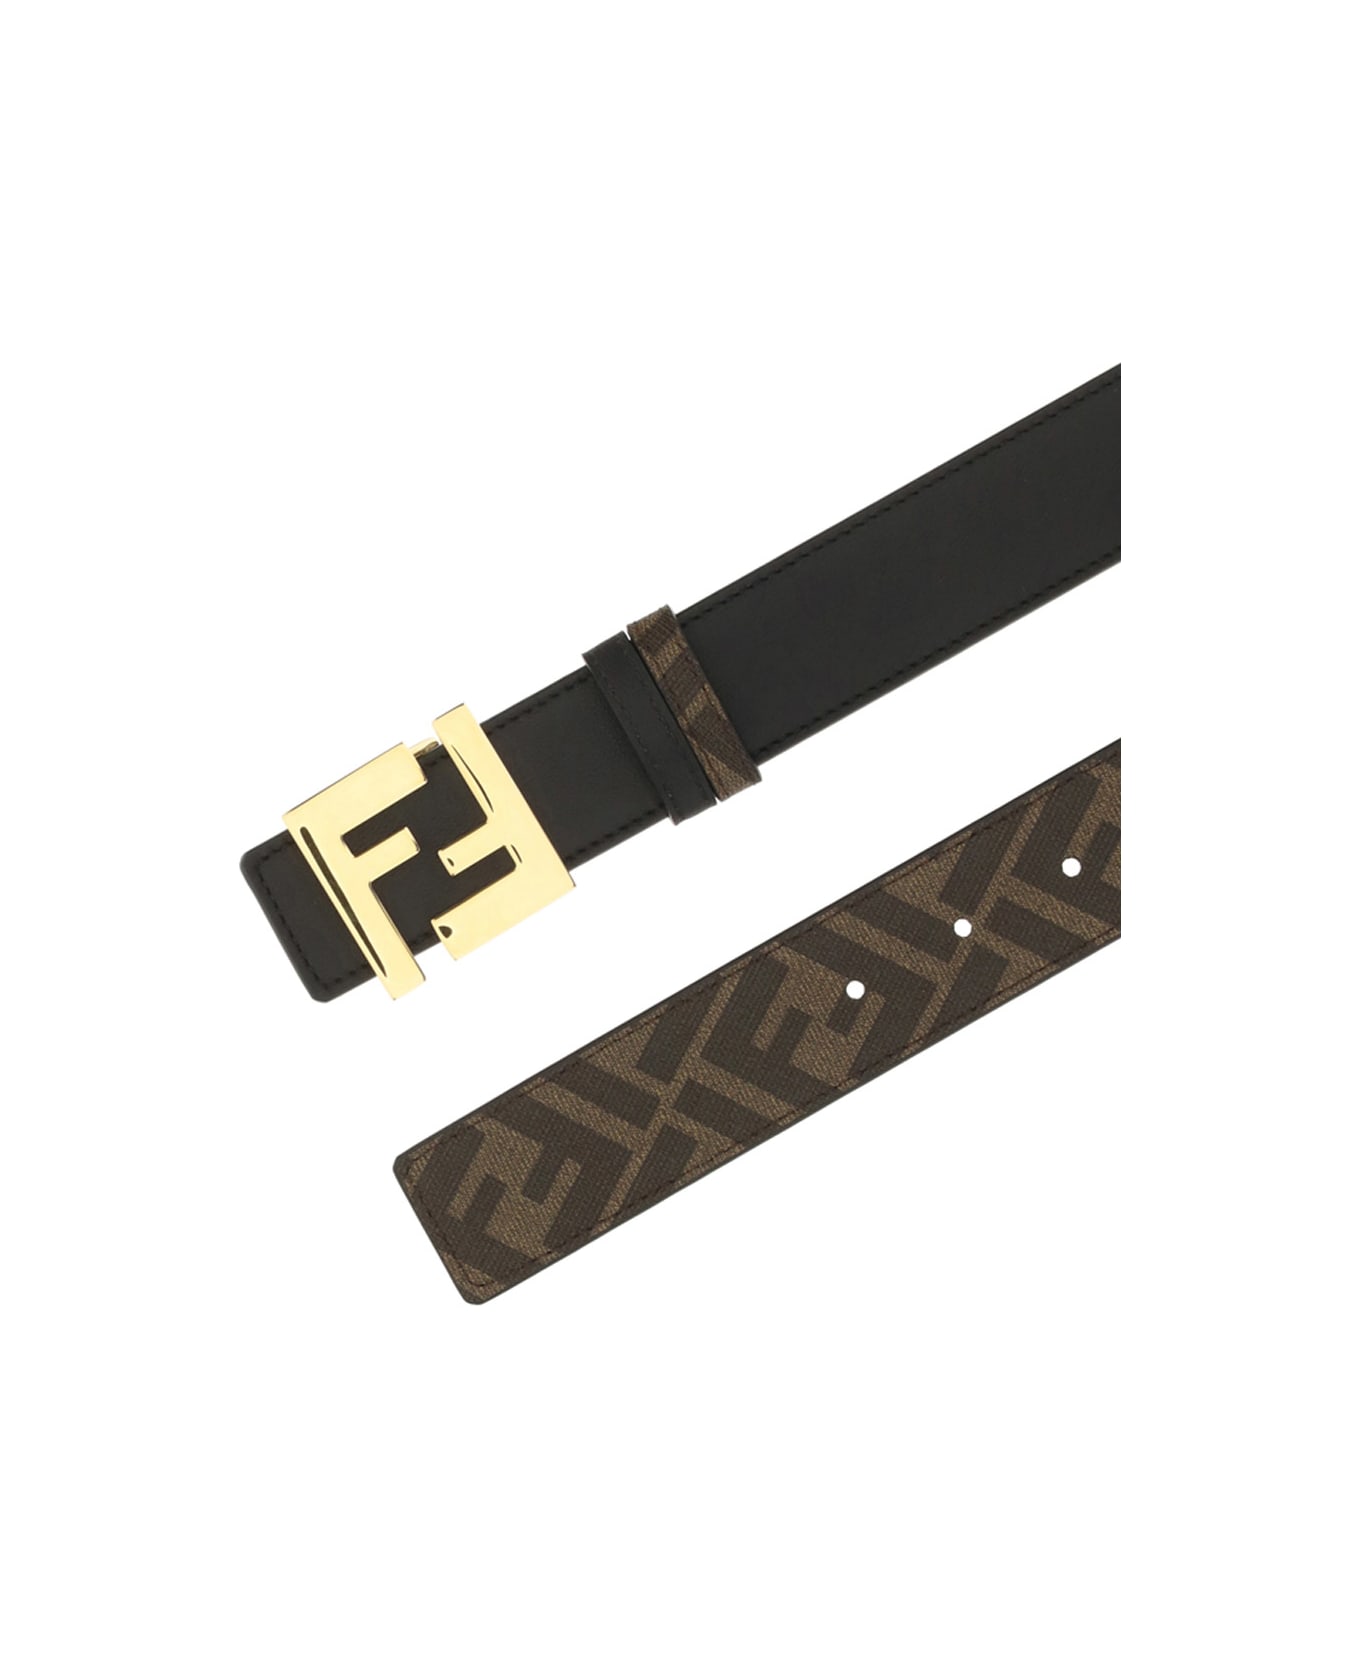 Fendi Ff Motif Reversible Belt - Brown